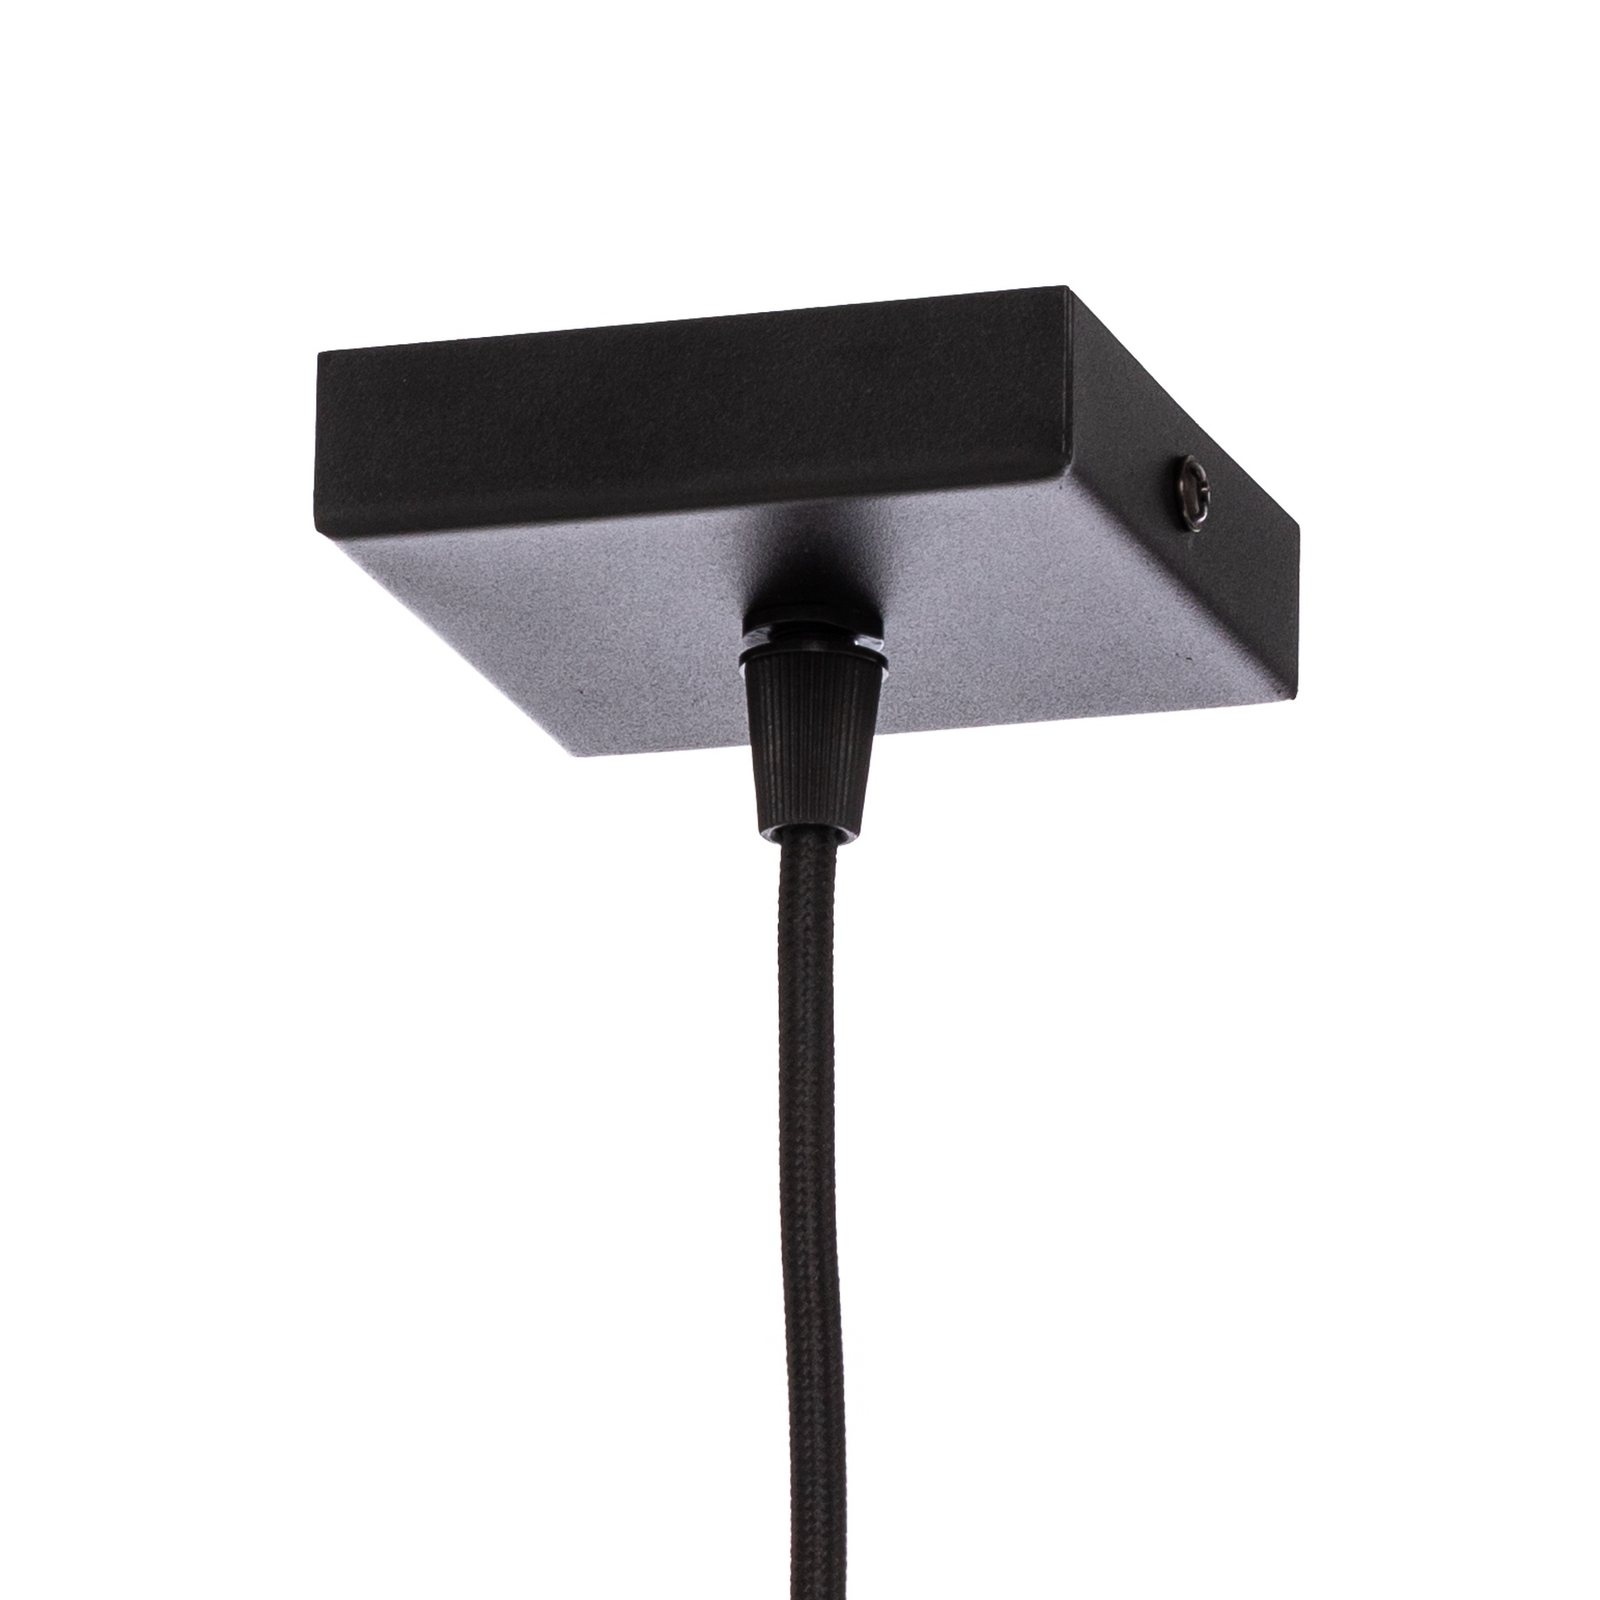 Euluna Thalassa hanglamp 1-lamp G9 zwart/koper